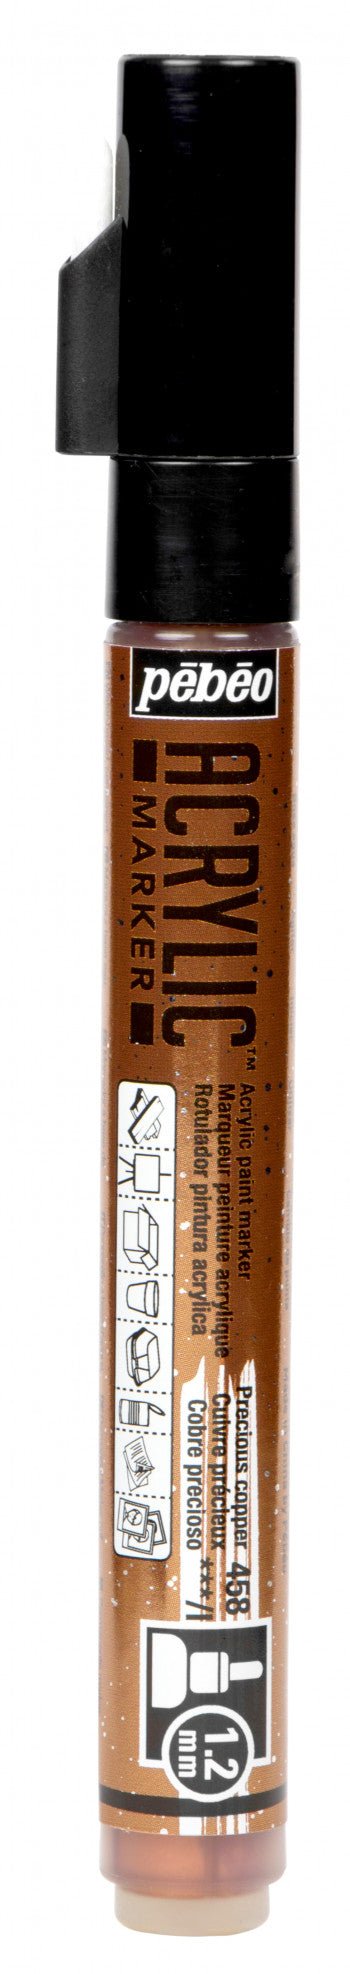 Acrylic Marker 1.2mm Pebeo      Cuivre précieux - 458